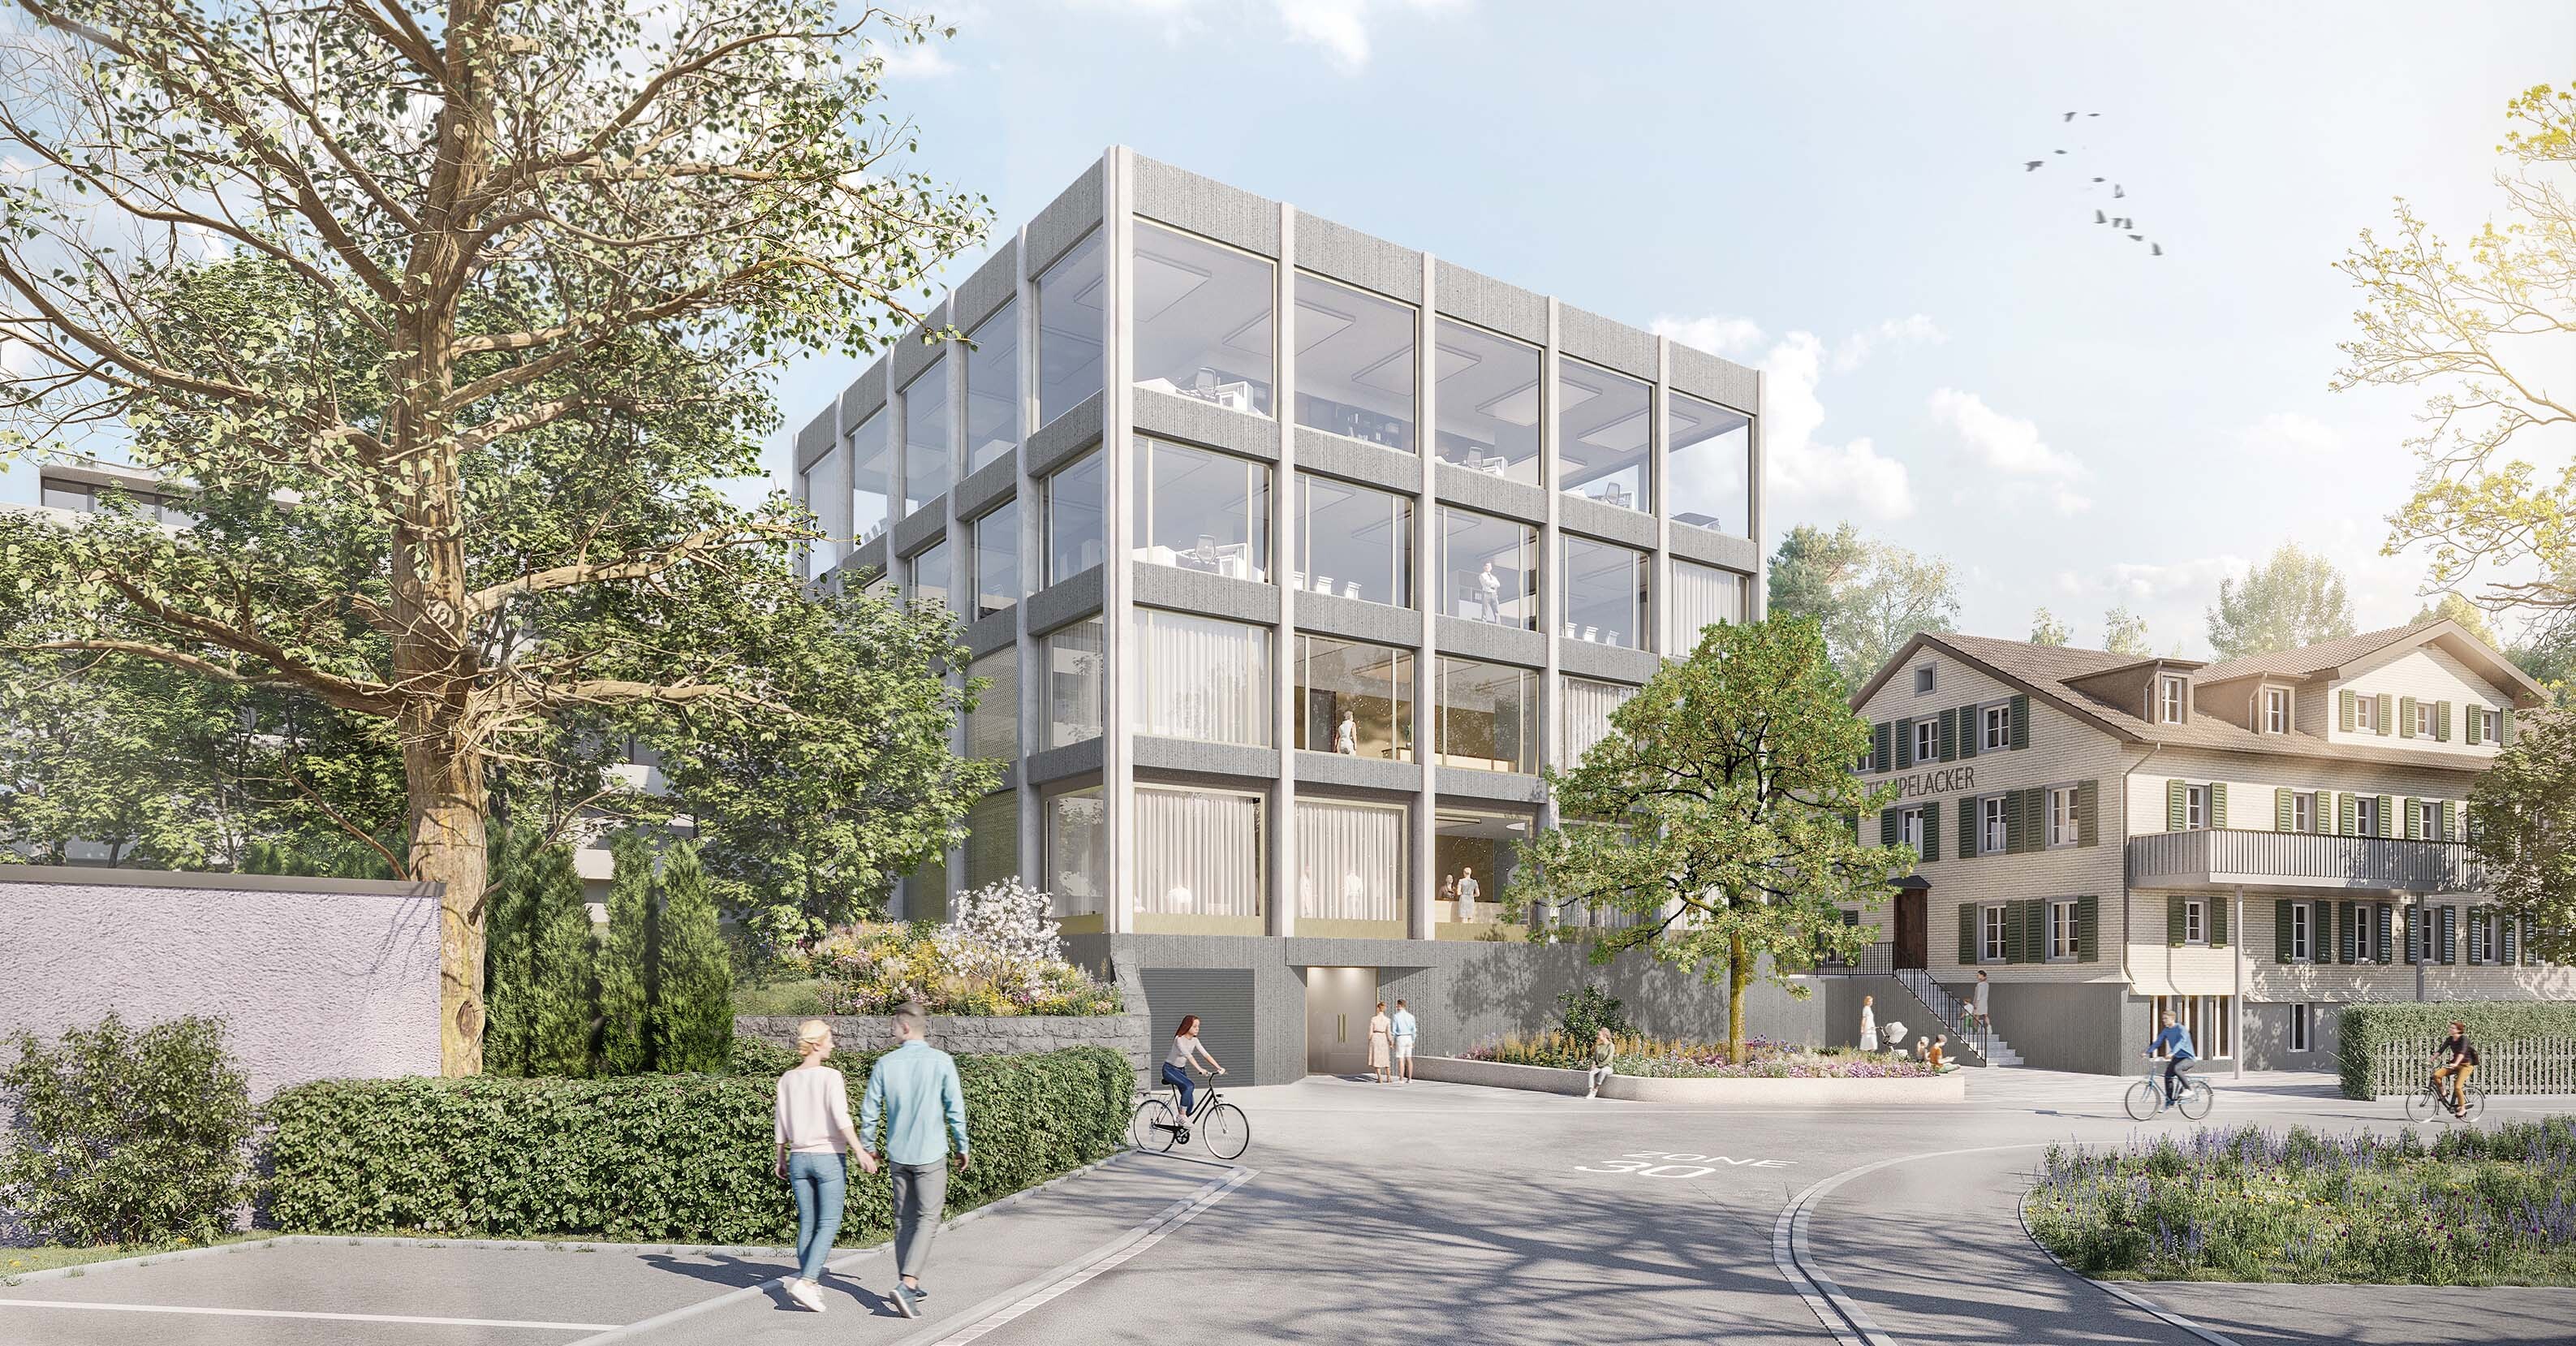 Neubau Haus 14 Kantonsspital St. Gallen | 3. Rang, Wettbewerb